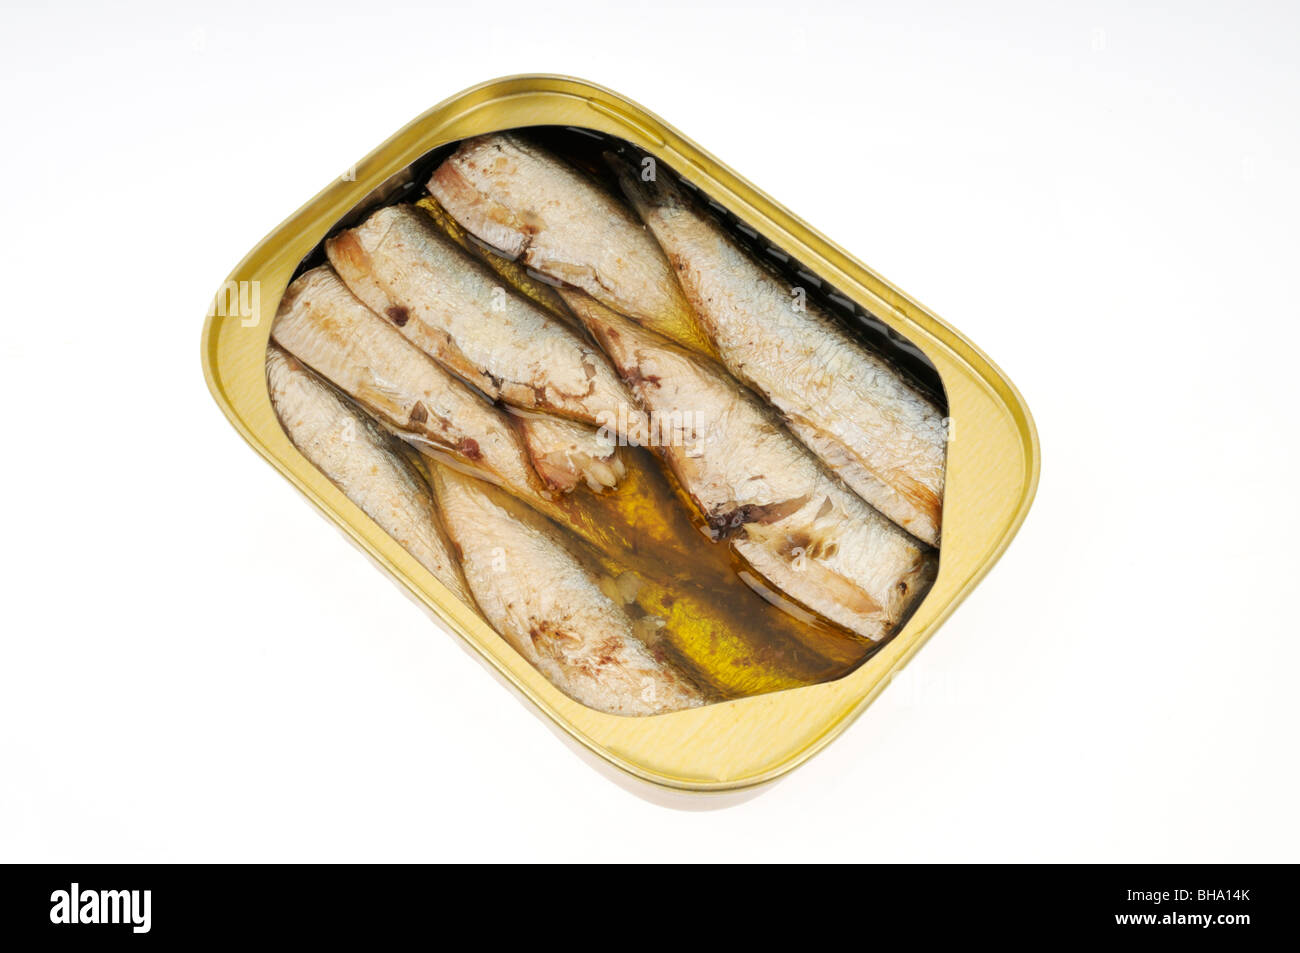 Aprire una scatoletta di sardine confezionate in olio su sfondo bianco, tagliato fuori. Foto Stock